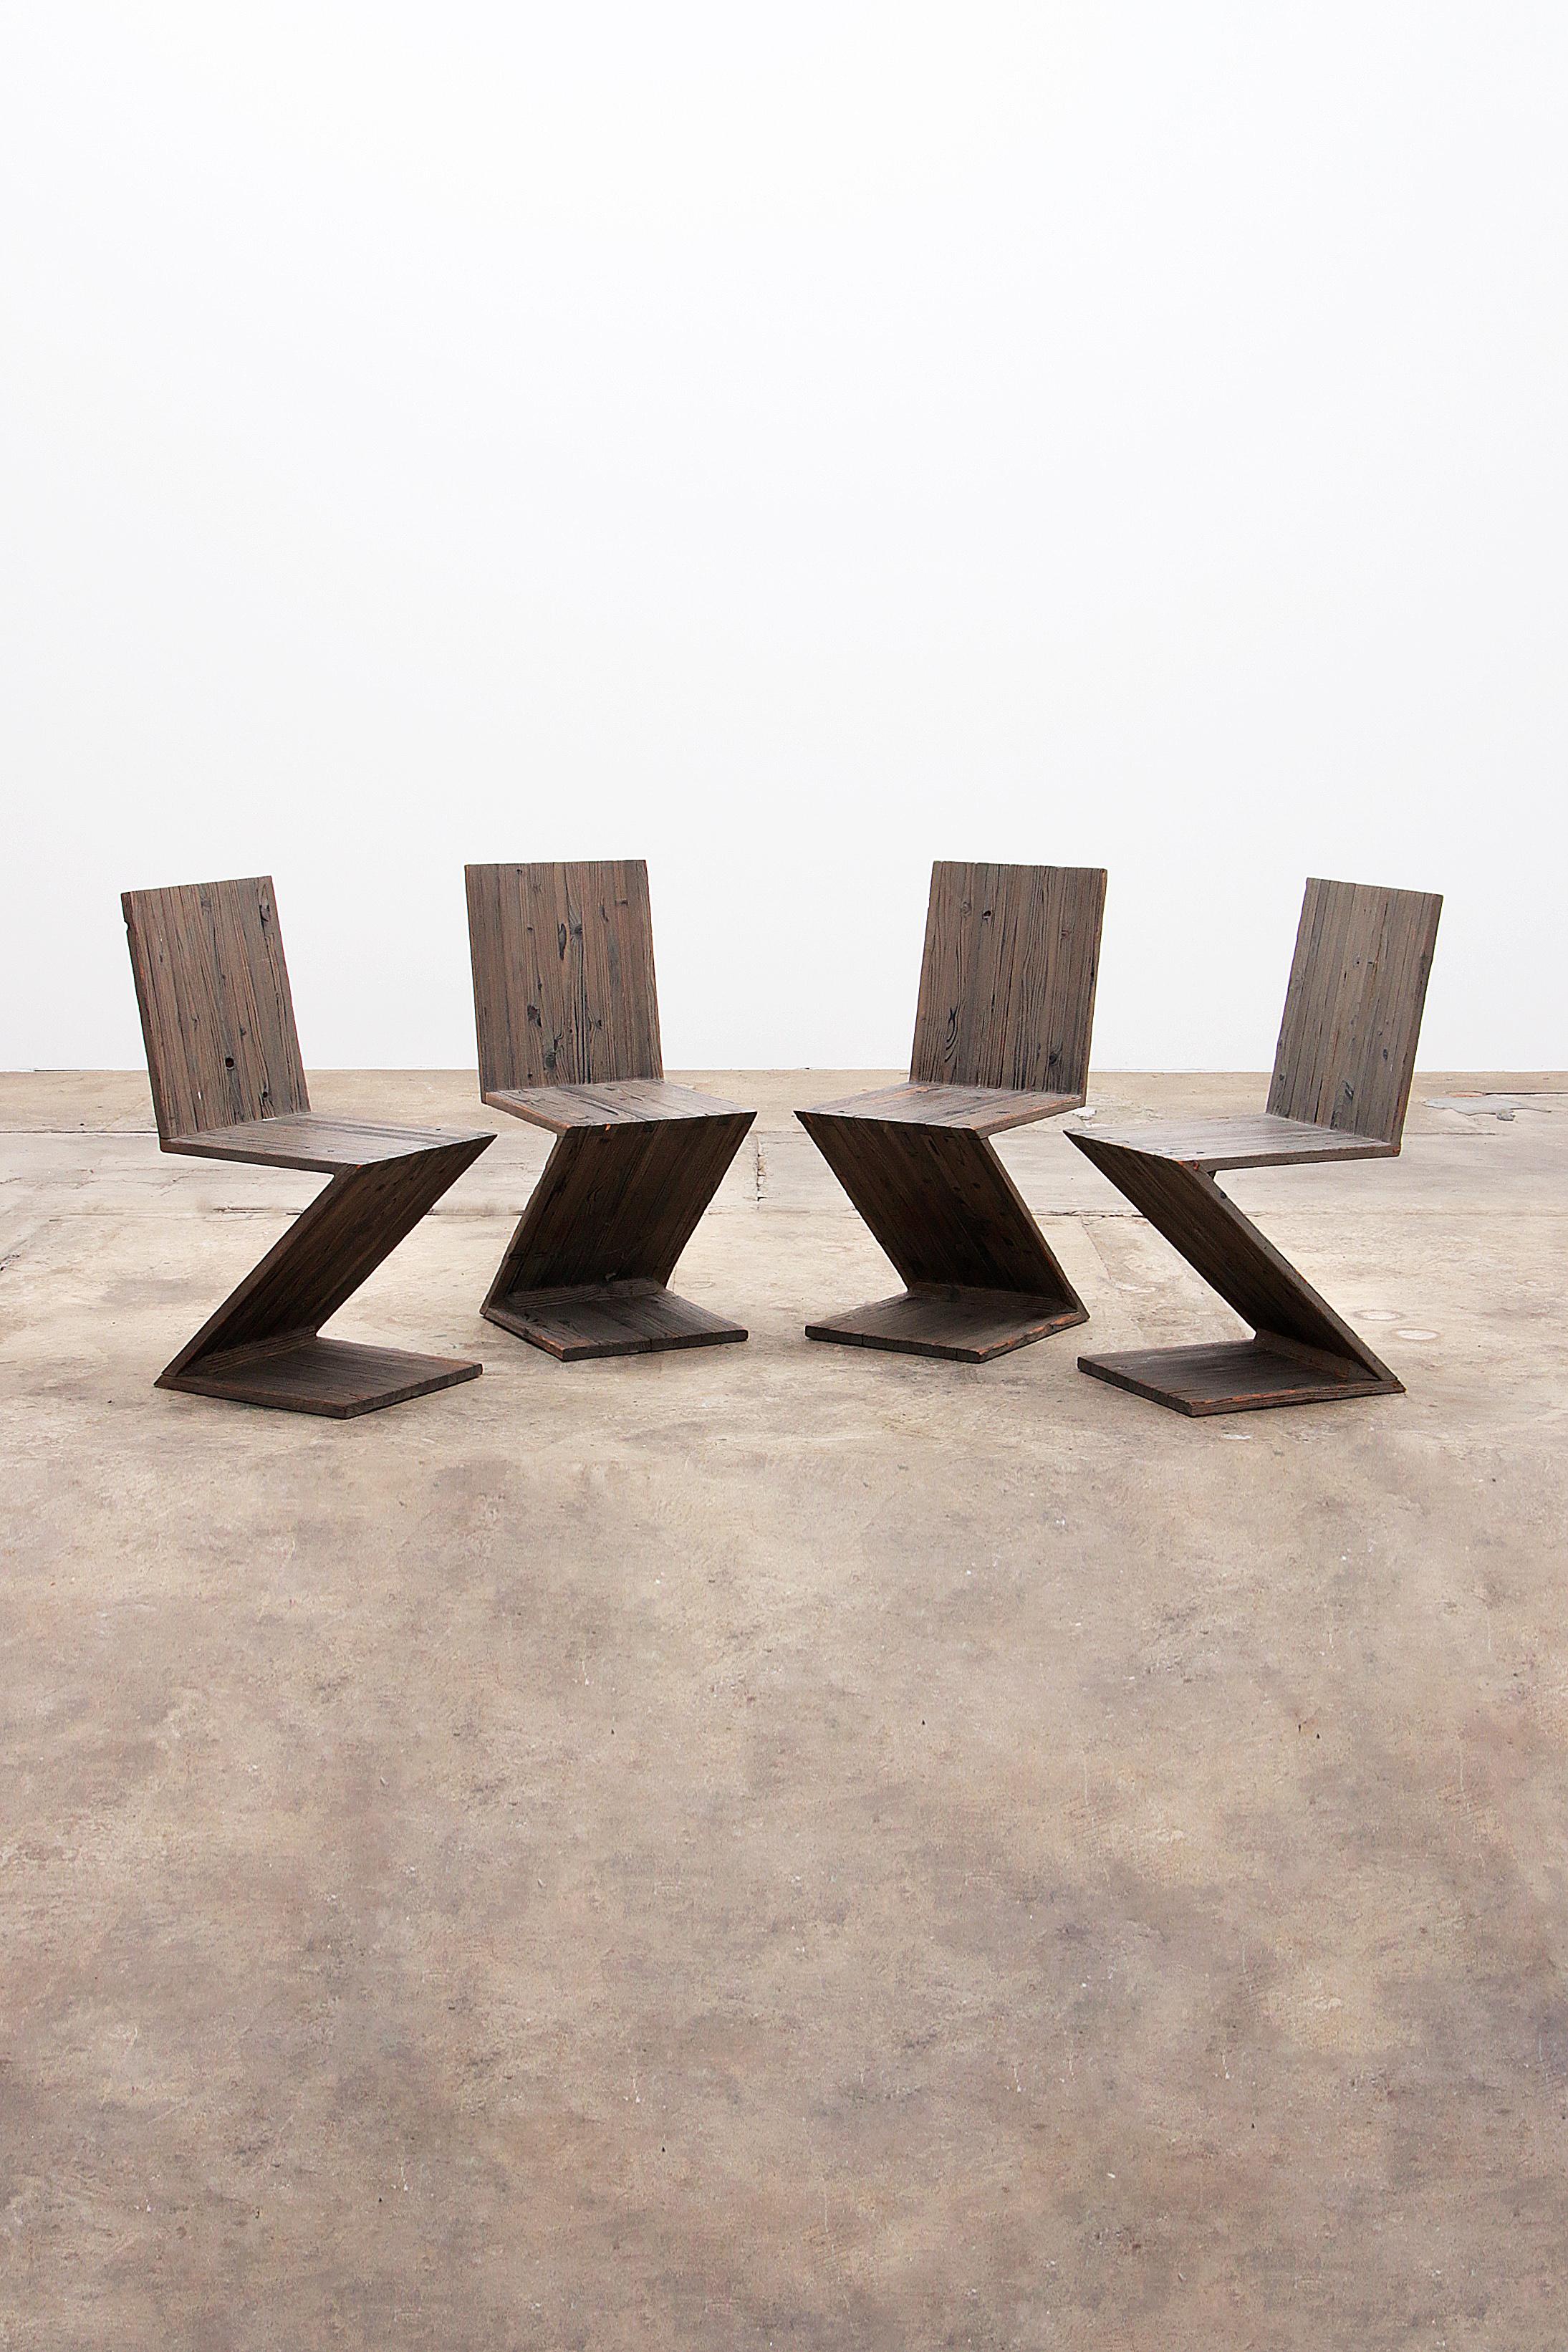 Découvrez l'emblématique chaise Zigzag de Rietveld, un chef-d'œuvre du design néerlandais qui enrichit les intérieurs du monde entier depuis 1934. 
Artistics pour une famille d'artistes, cette édition spéciale offre une assise plus profonde pour un